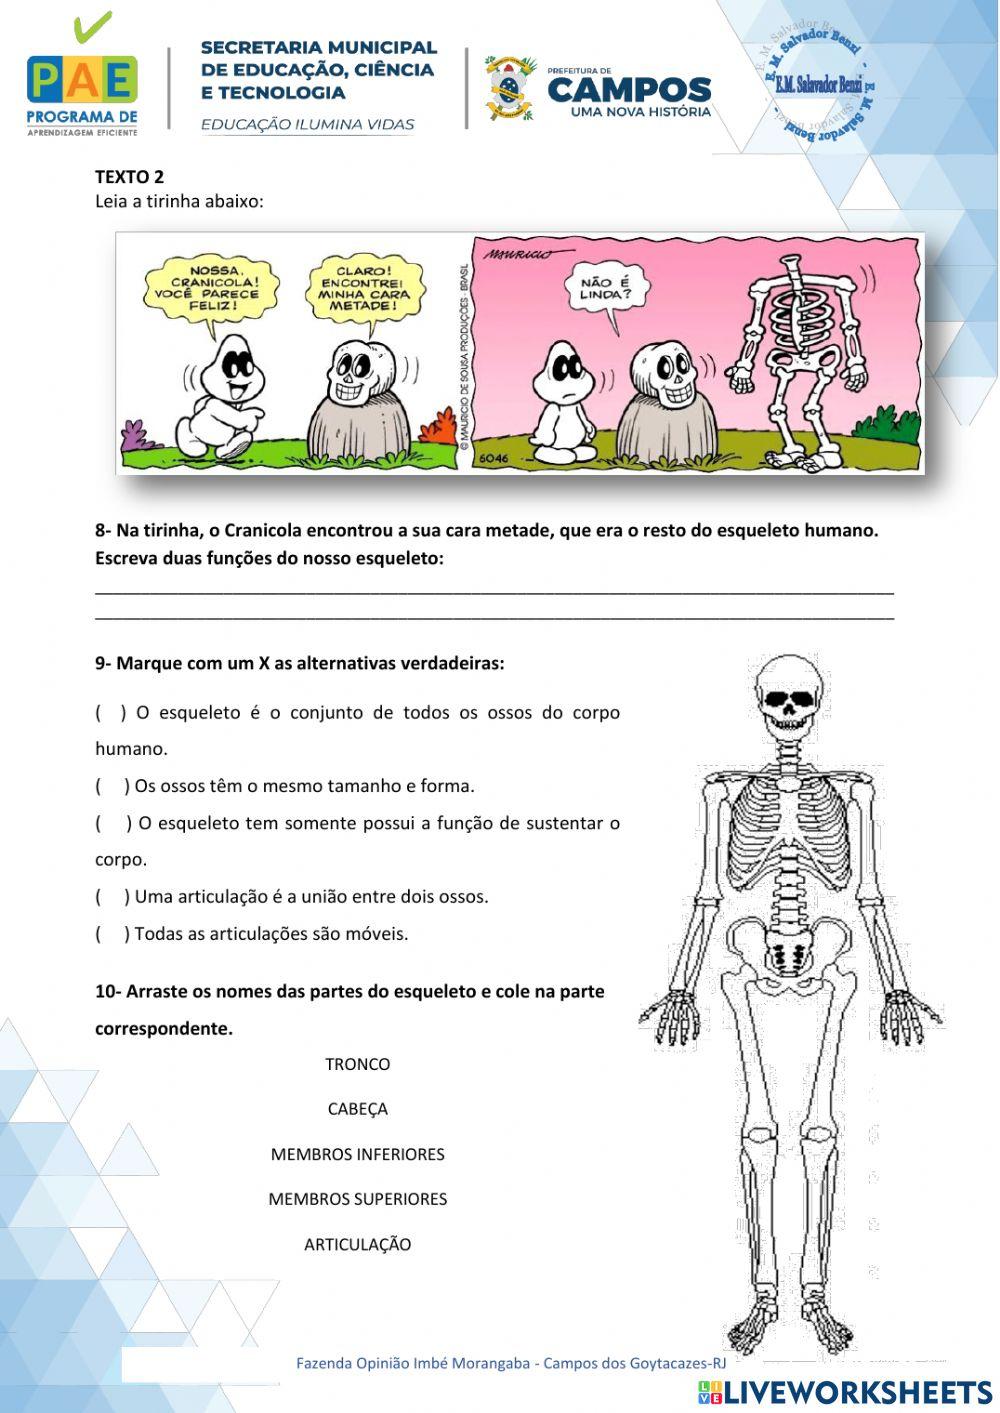 Cadeia Alimentar, Funções do Esqueleto e Partes do corpo Humano.